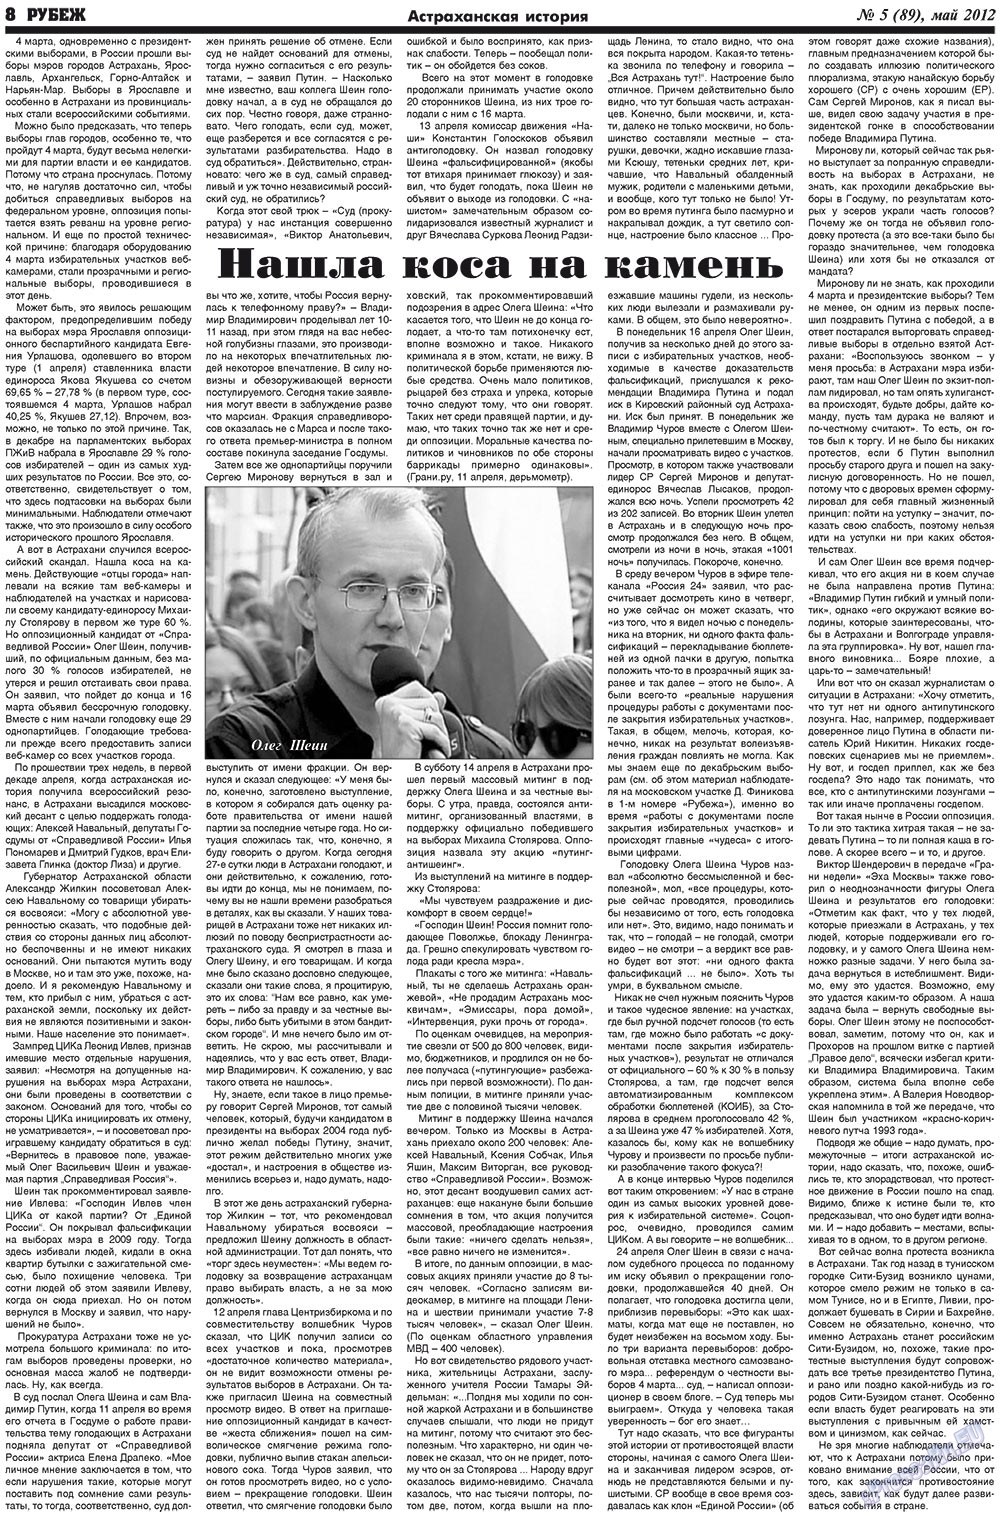 Рубеж (газета). 2012 год, номер 5, стр. 8